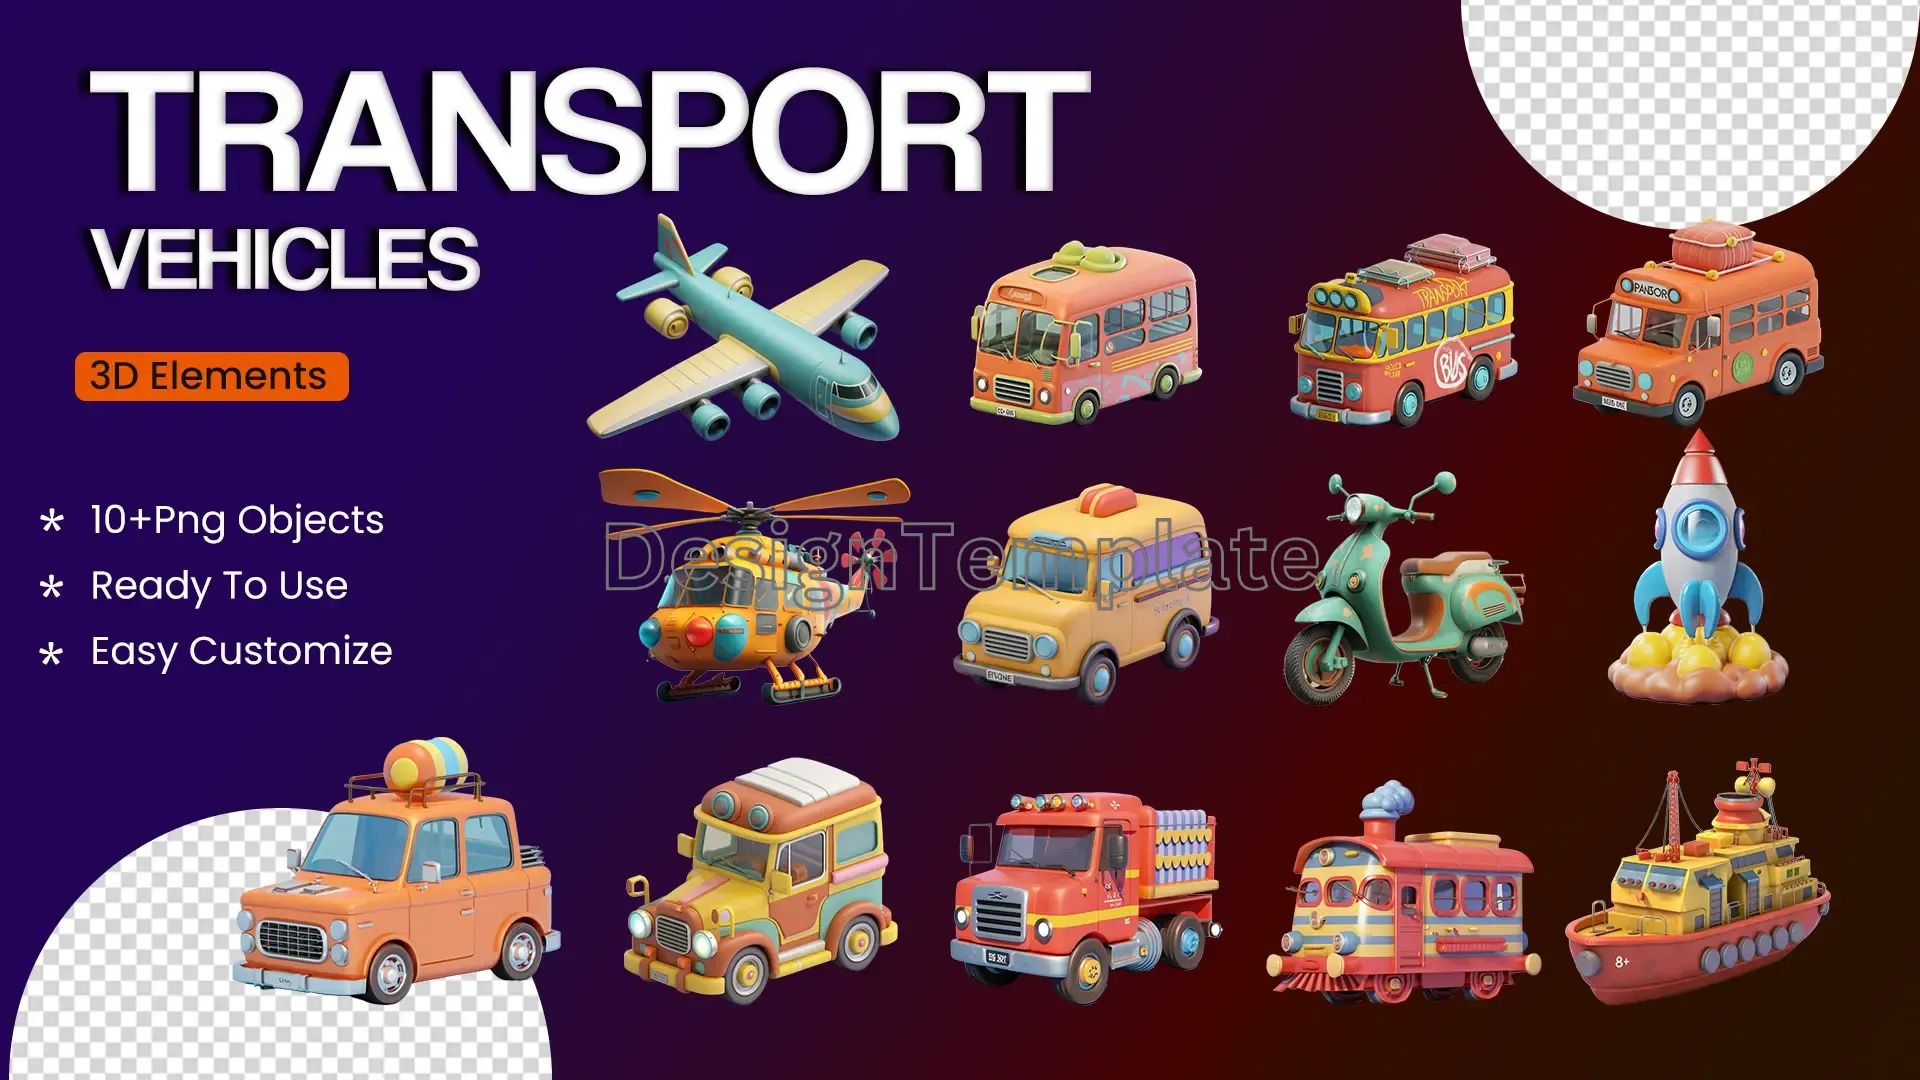 Comprehensive Transport Vehicles 3D Icons Mega Pack